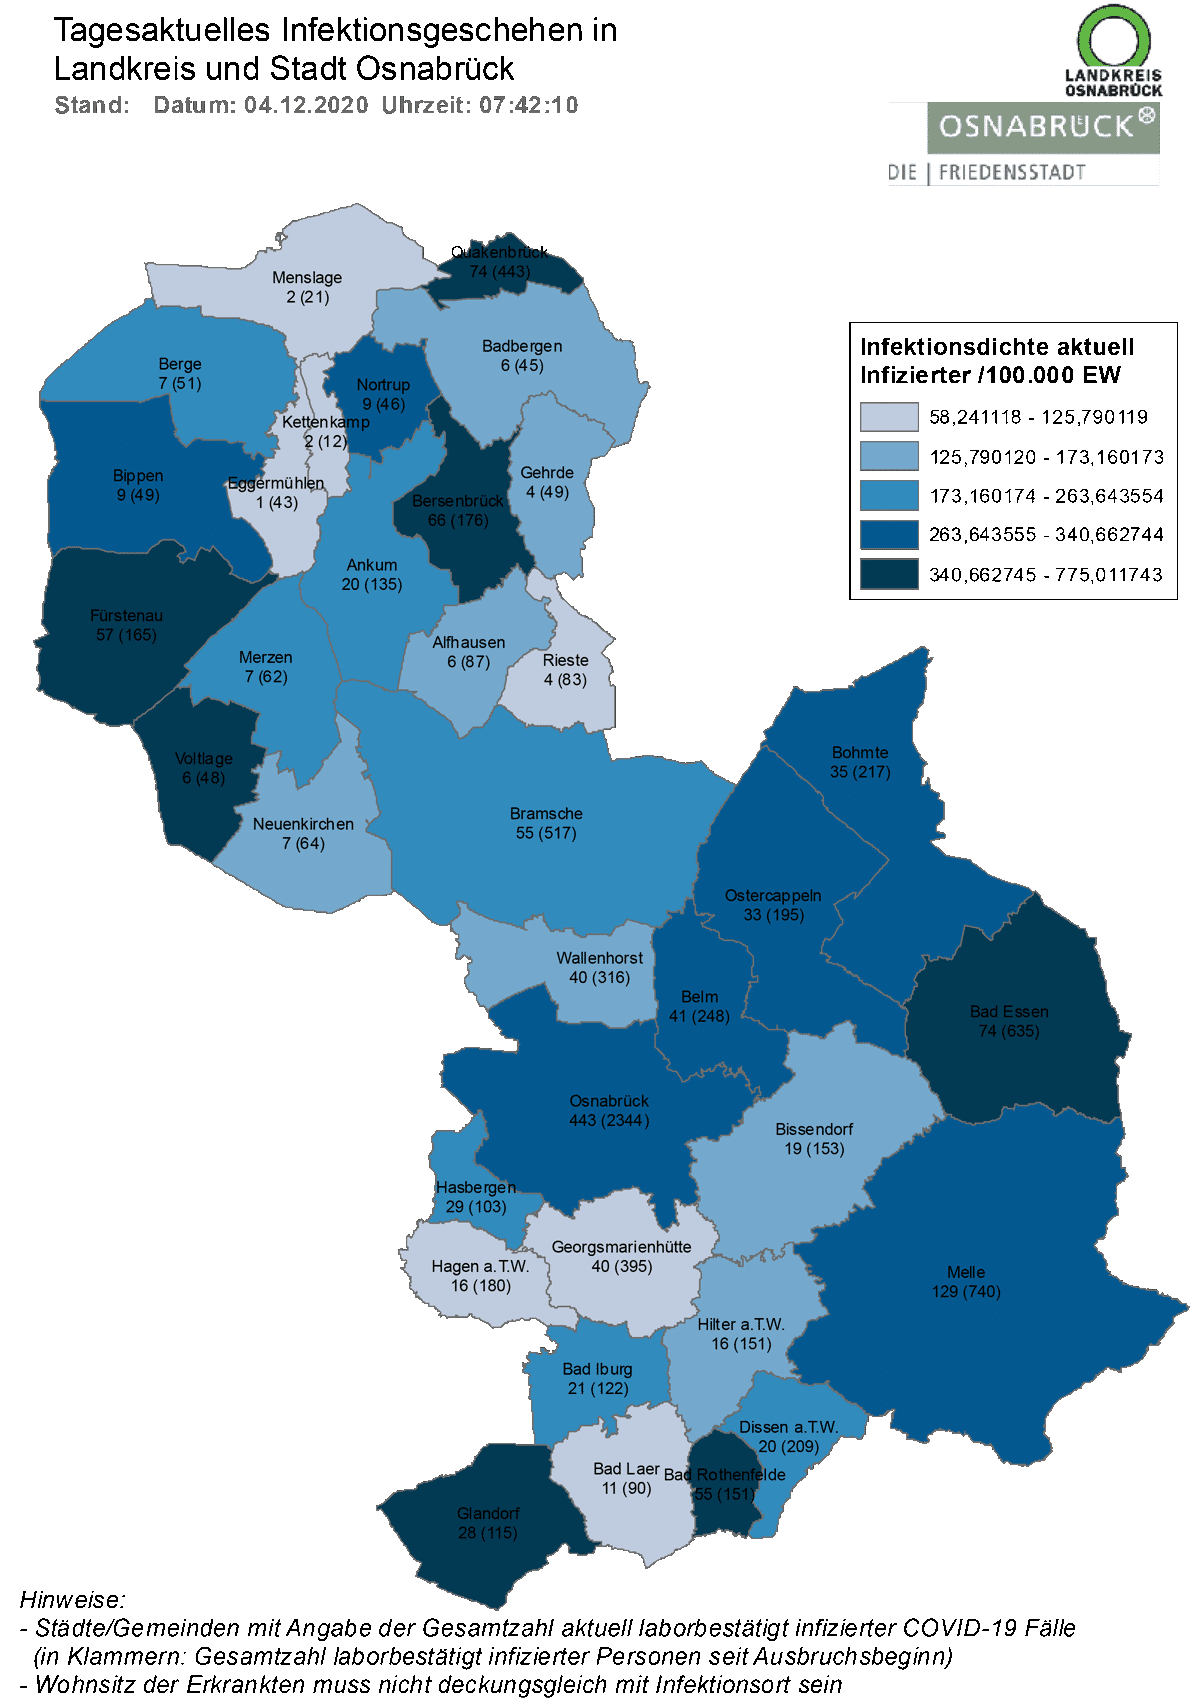 Quelle: Landkreis Osnabrück